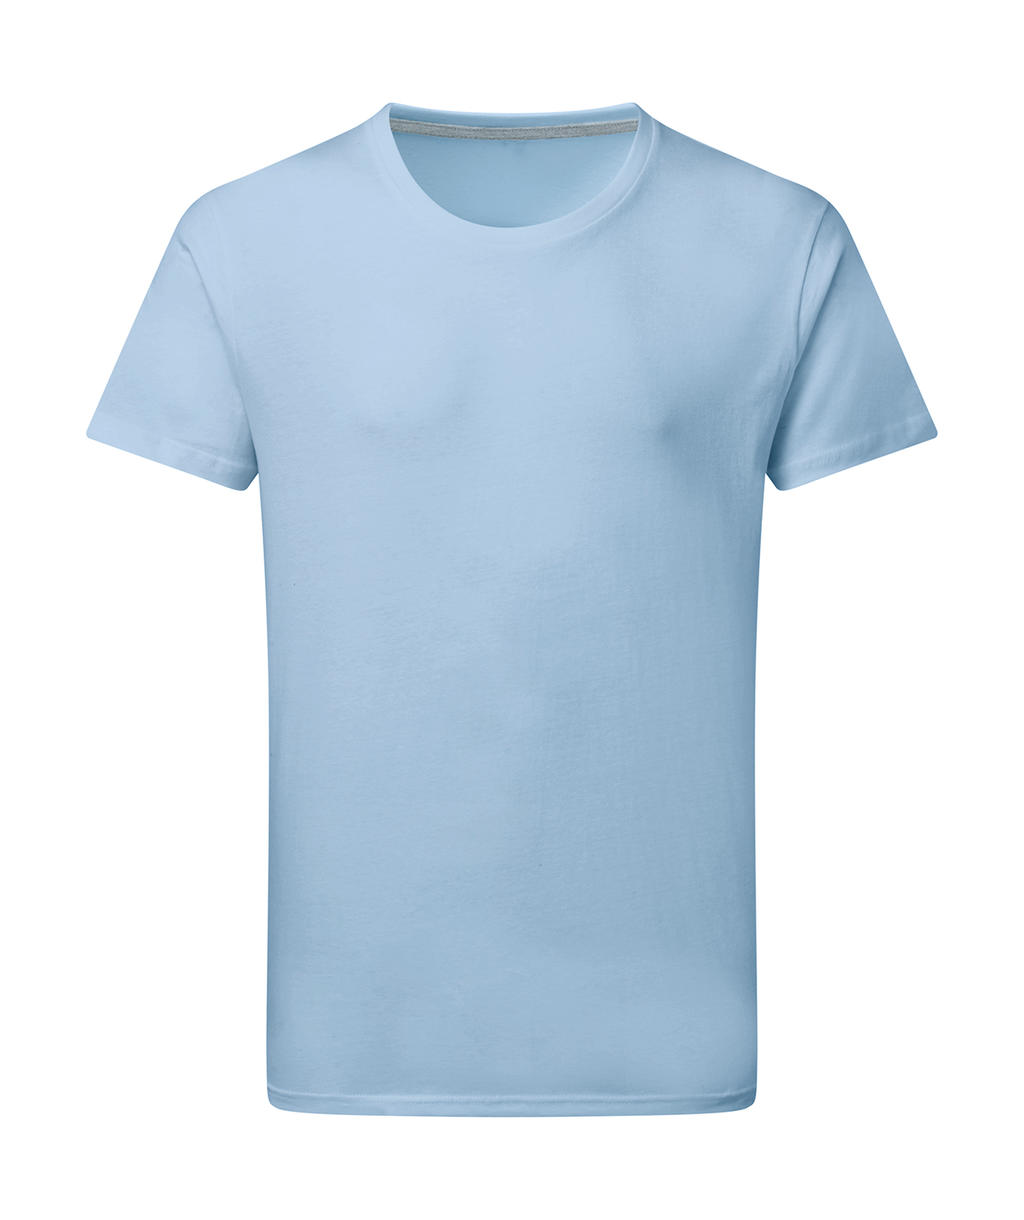 Dokonale potlačiteľné tričko bez štítku - sky